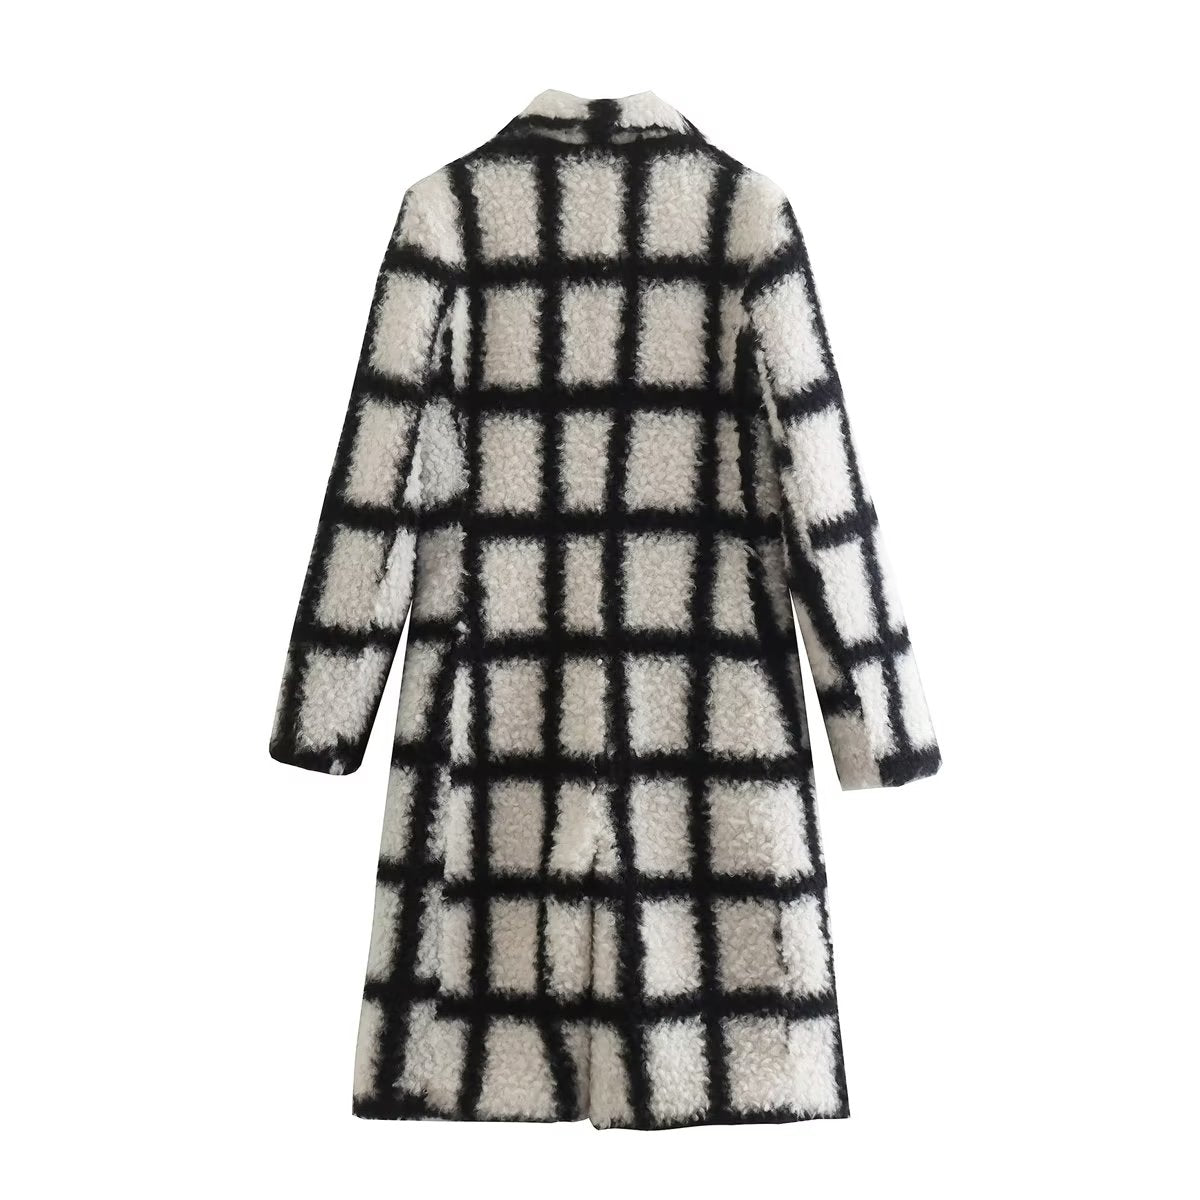 Eleanor Wool Coat